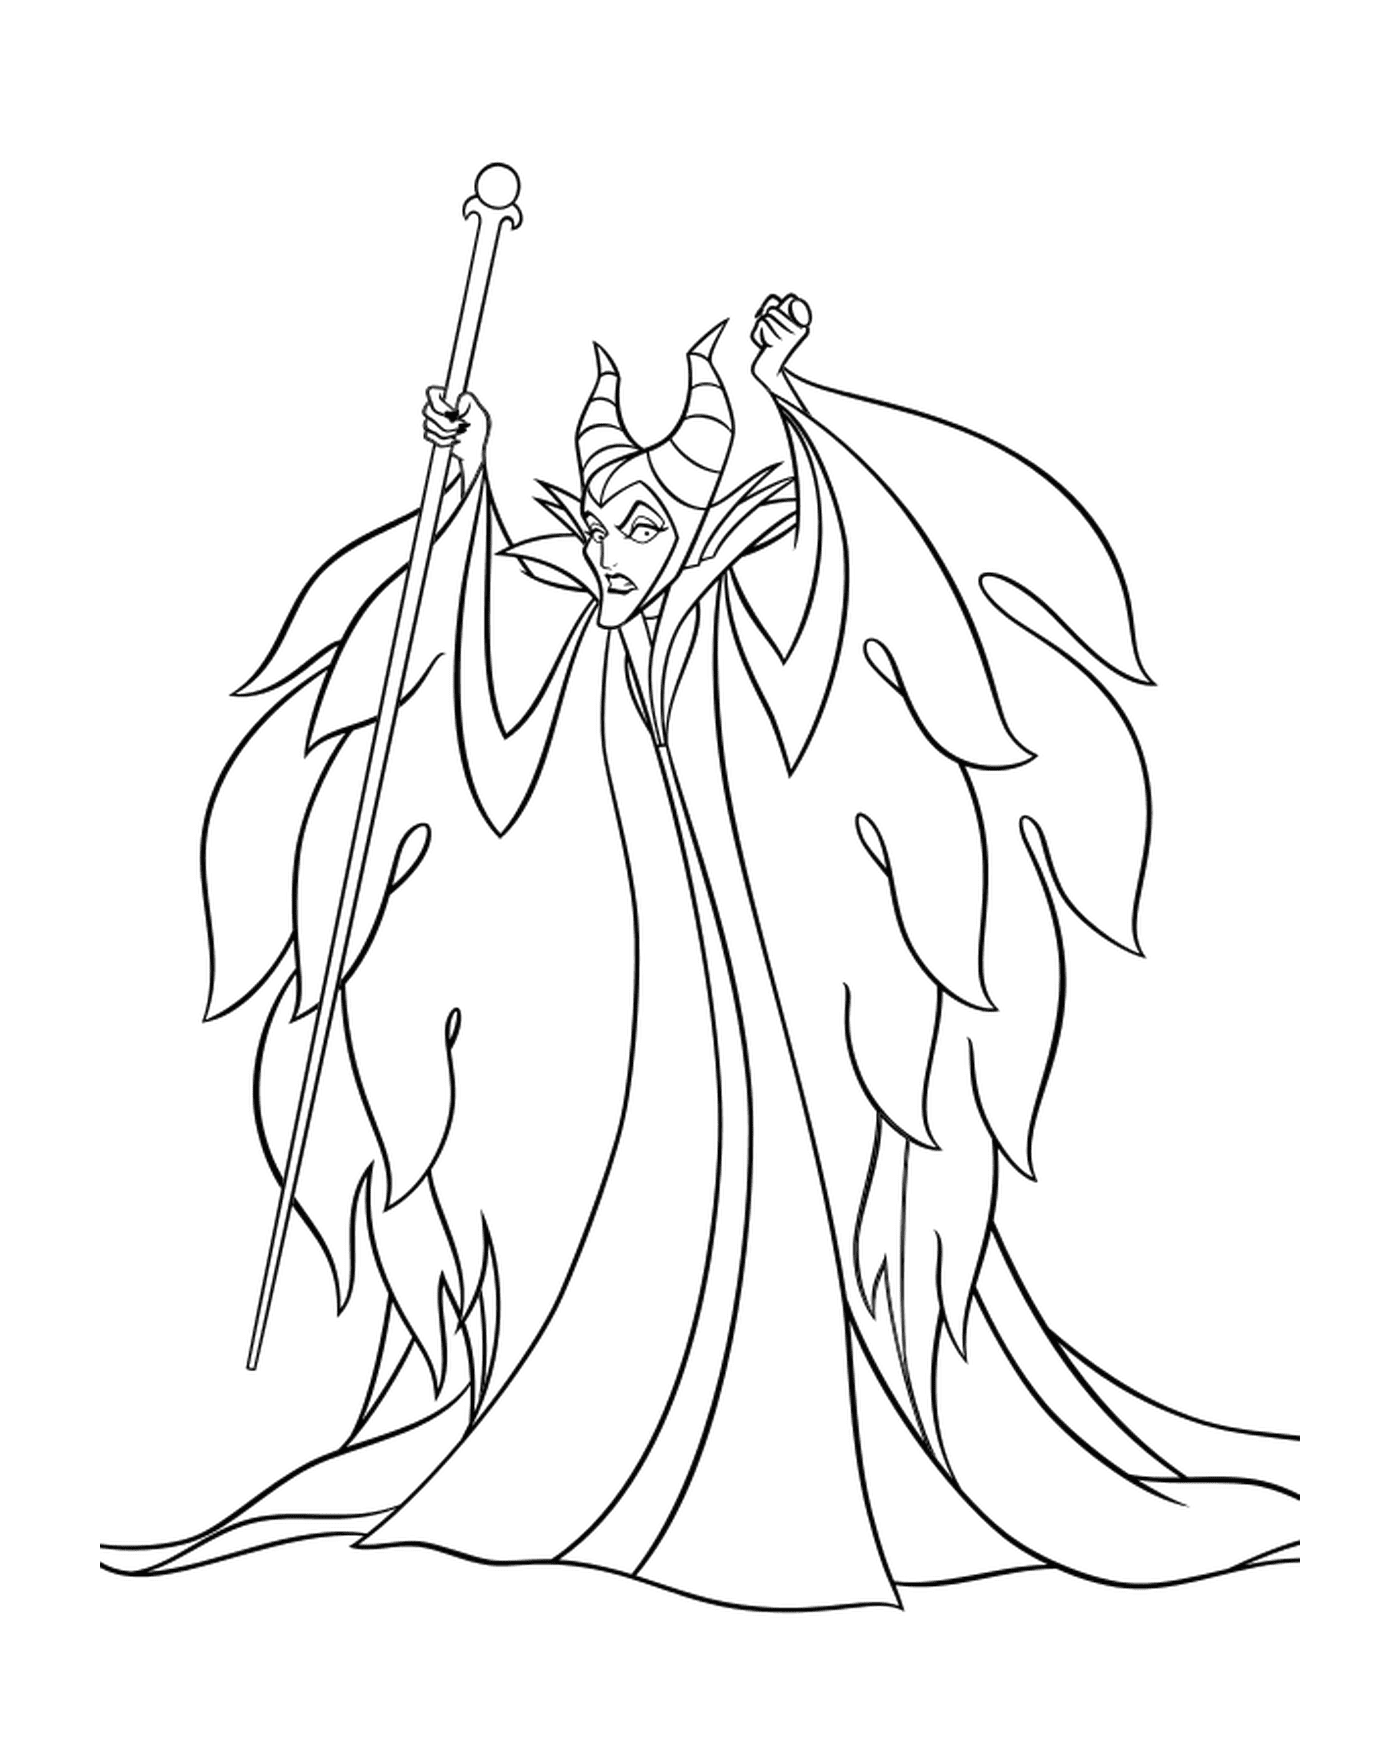  Maleficent, die böse Hexe 